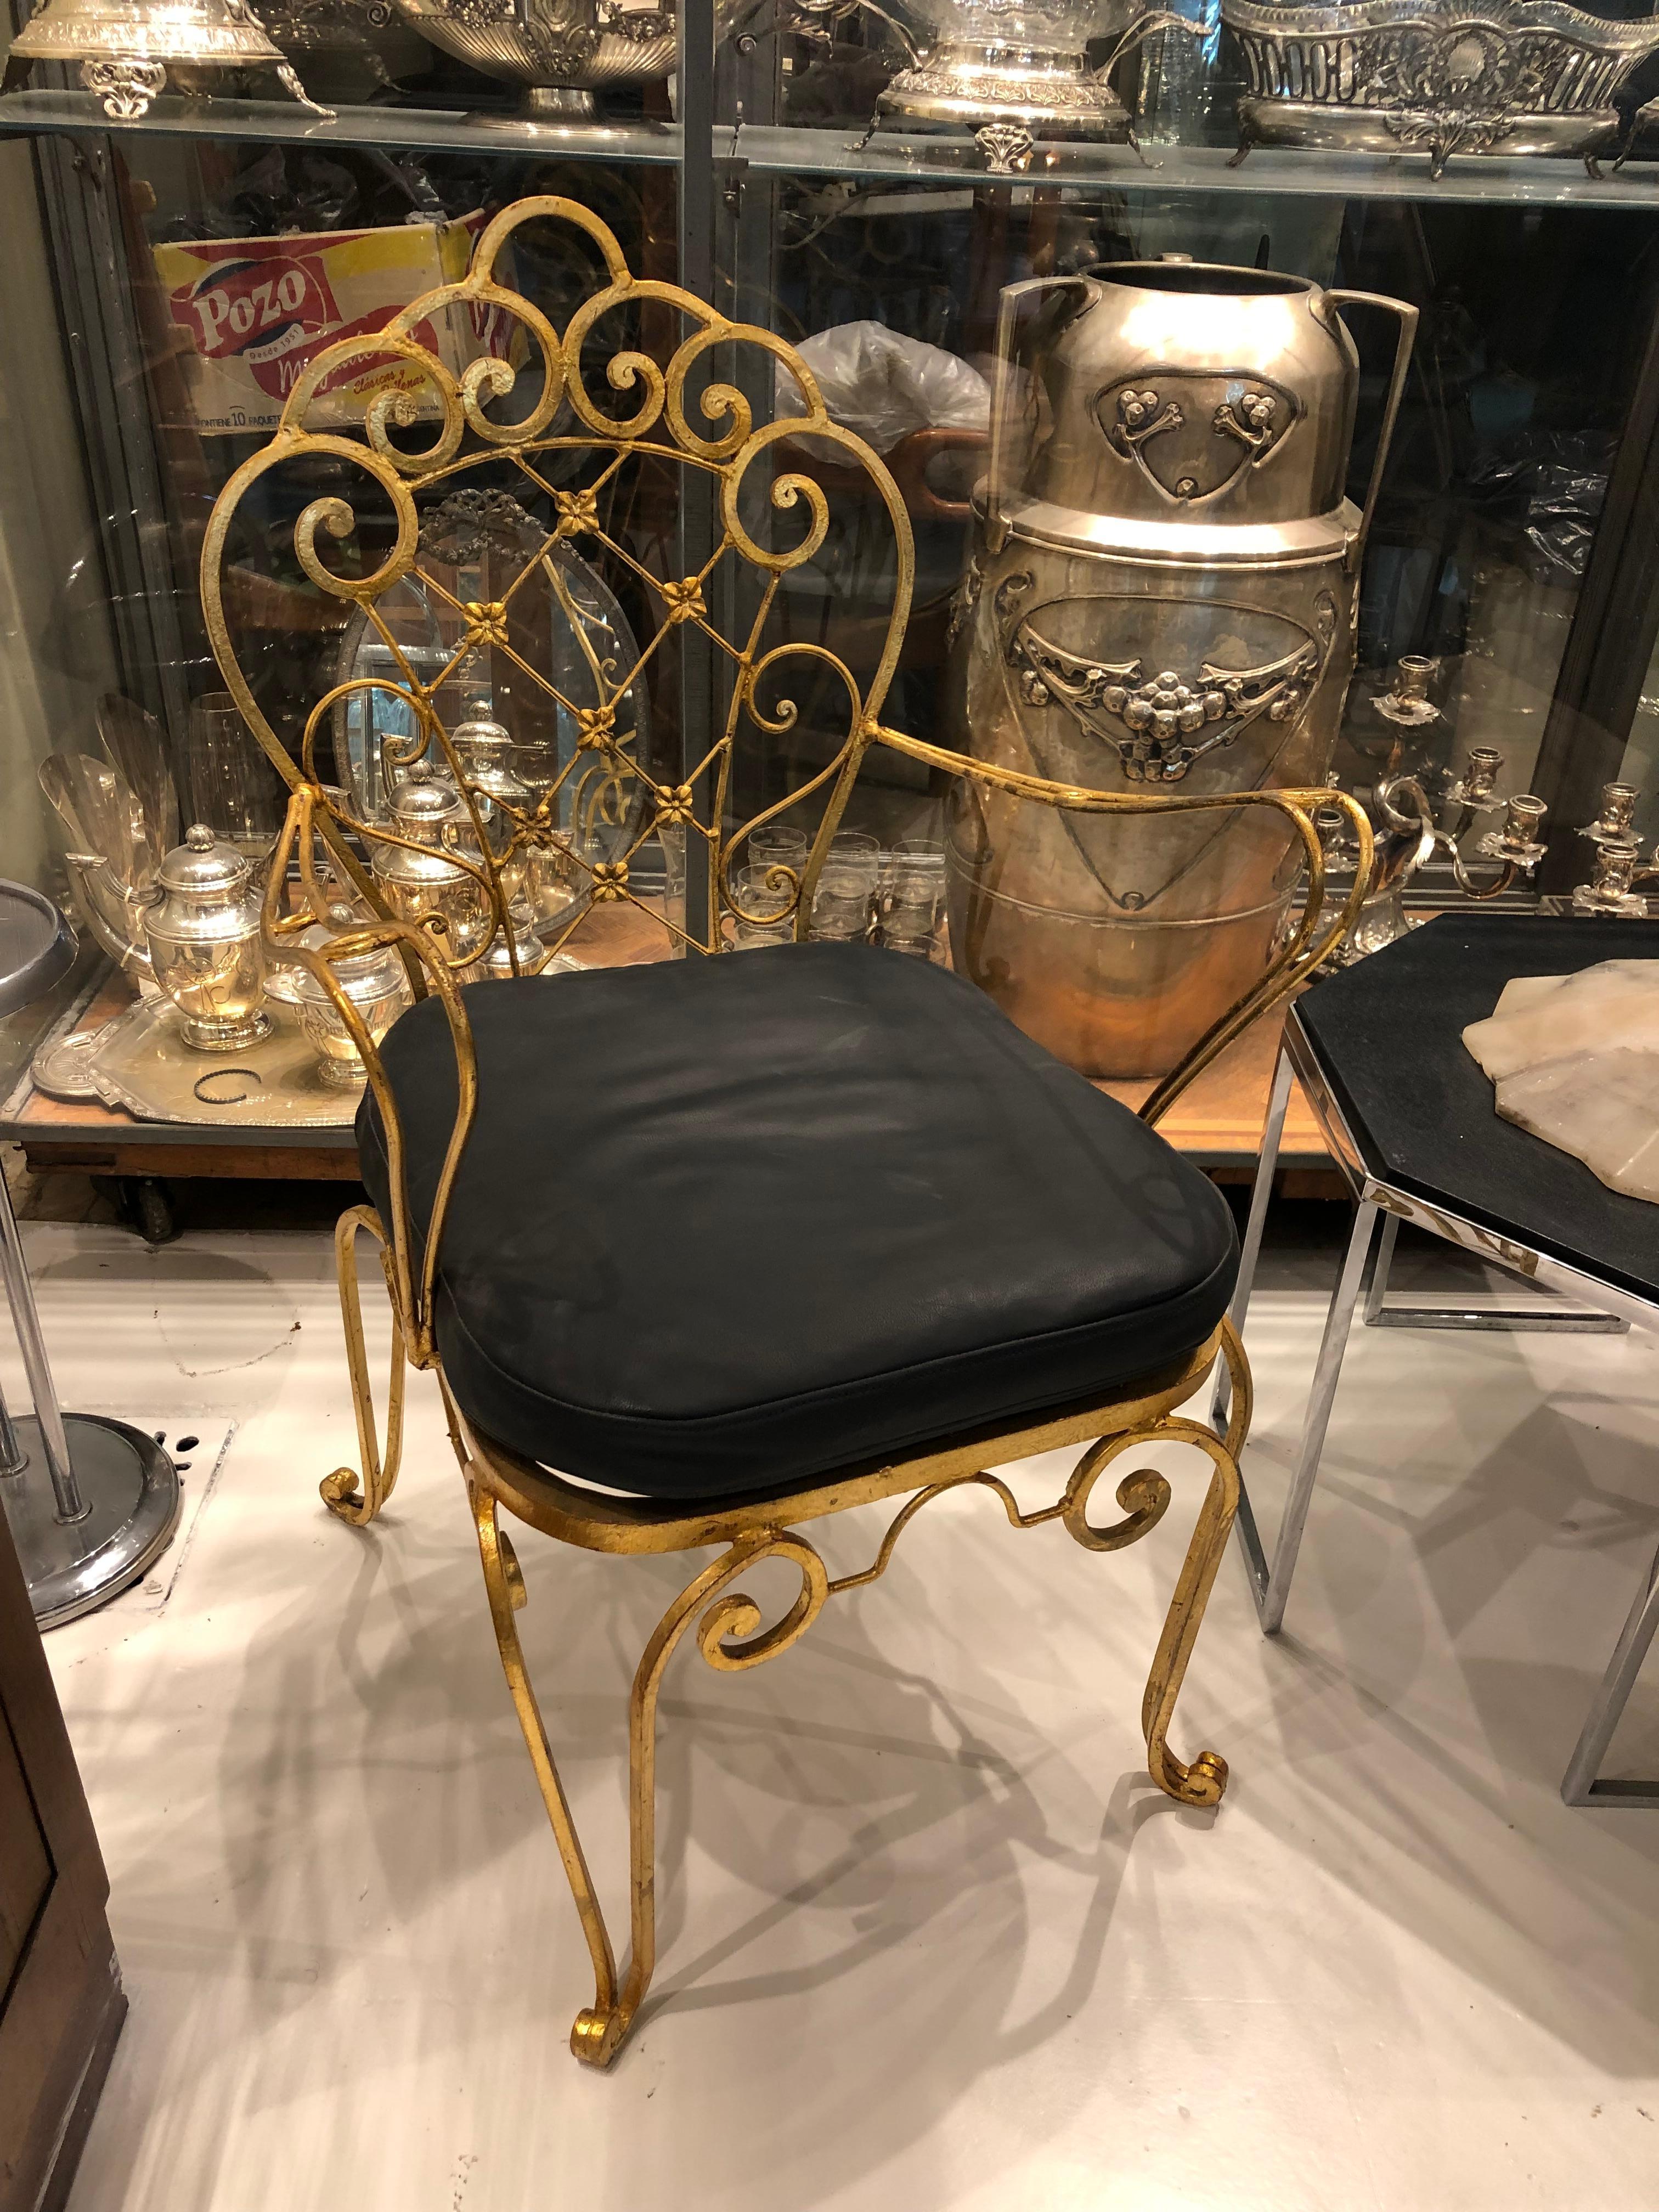 2 Sessel
Eisen auf Blattgold
Seit 1982 haben wir uns auf den Verkauf von Art Deco, Jugendstil und Vintage spezialisiert. Wenn Sie Fragen haben, stehen wir Ihnen gerne zur Verfügung.
Drücken Sie auf die Schaltfläche 